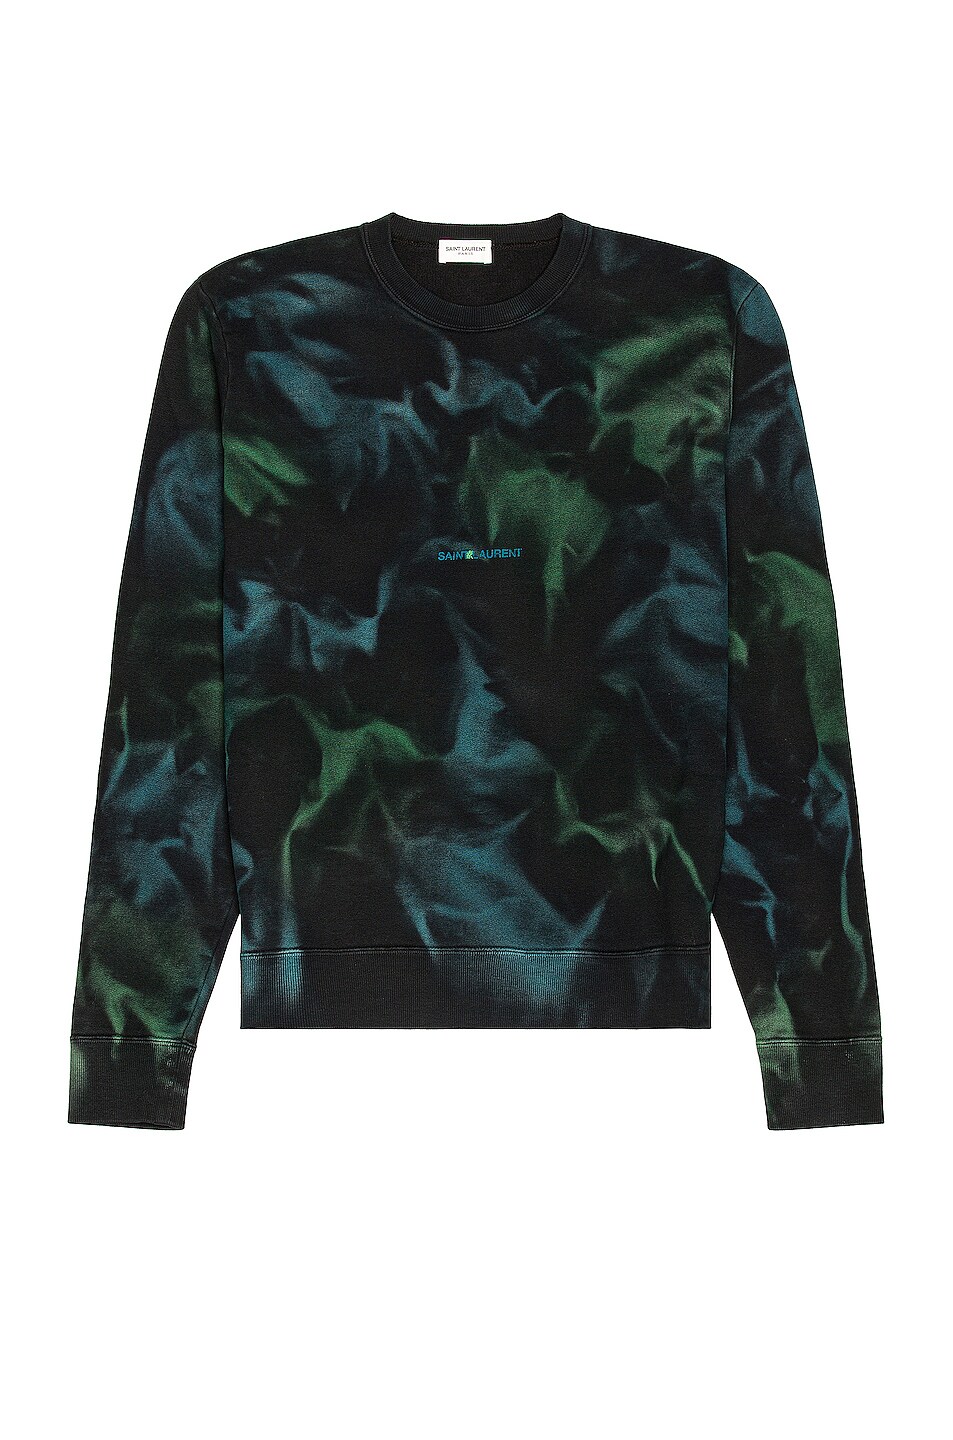 Image 1 of Saint Laurent Sweatshirt in Black & Green